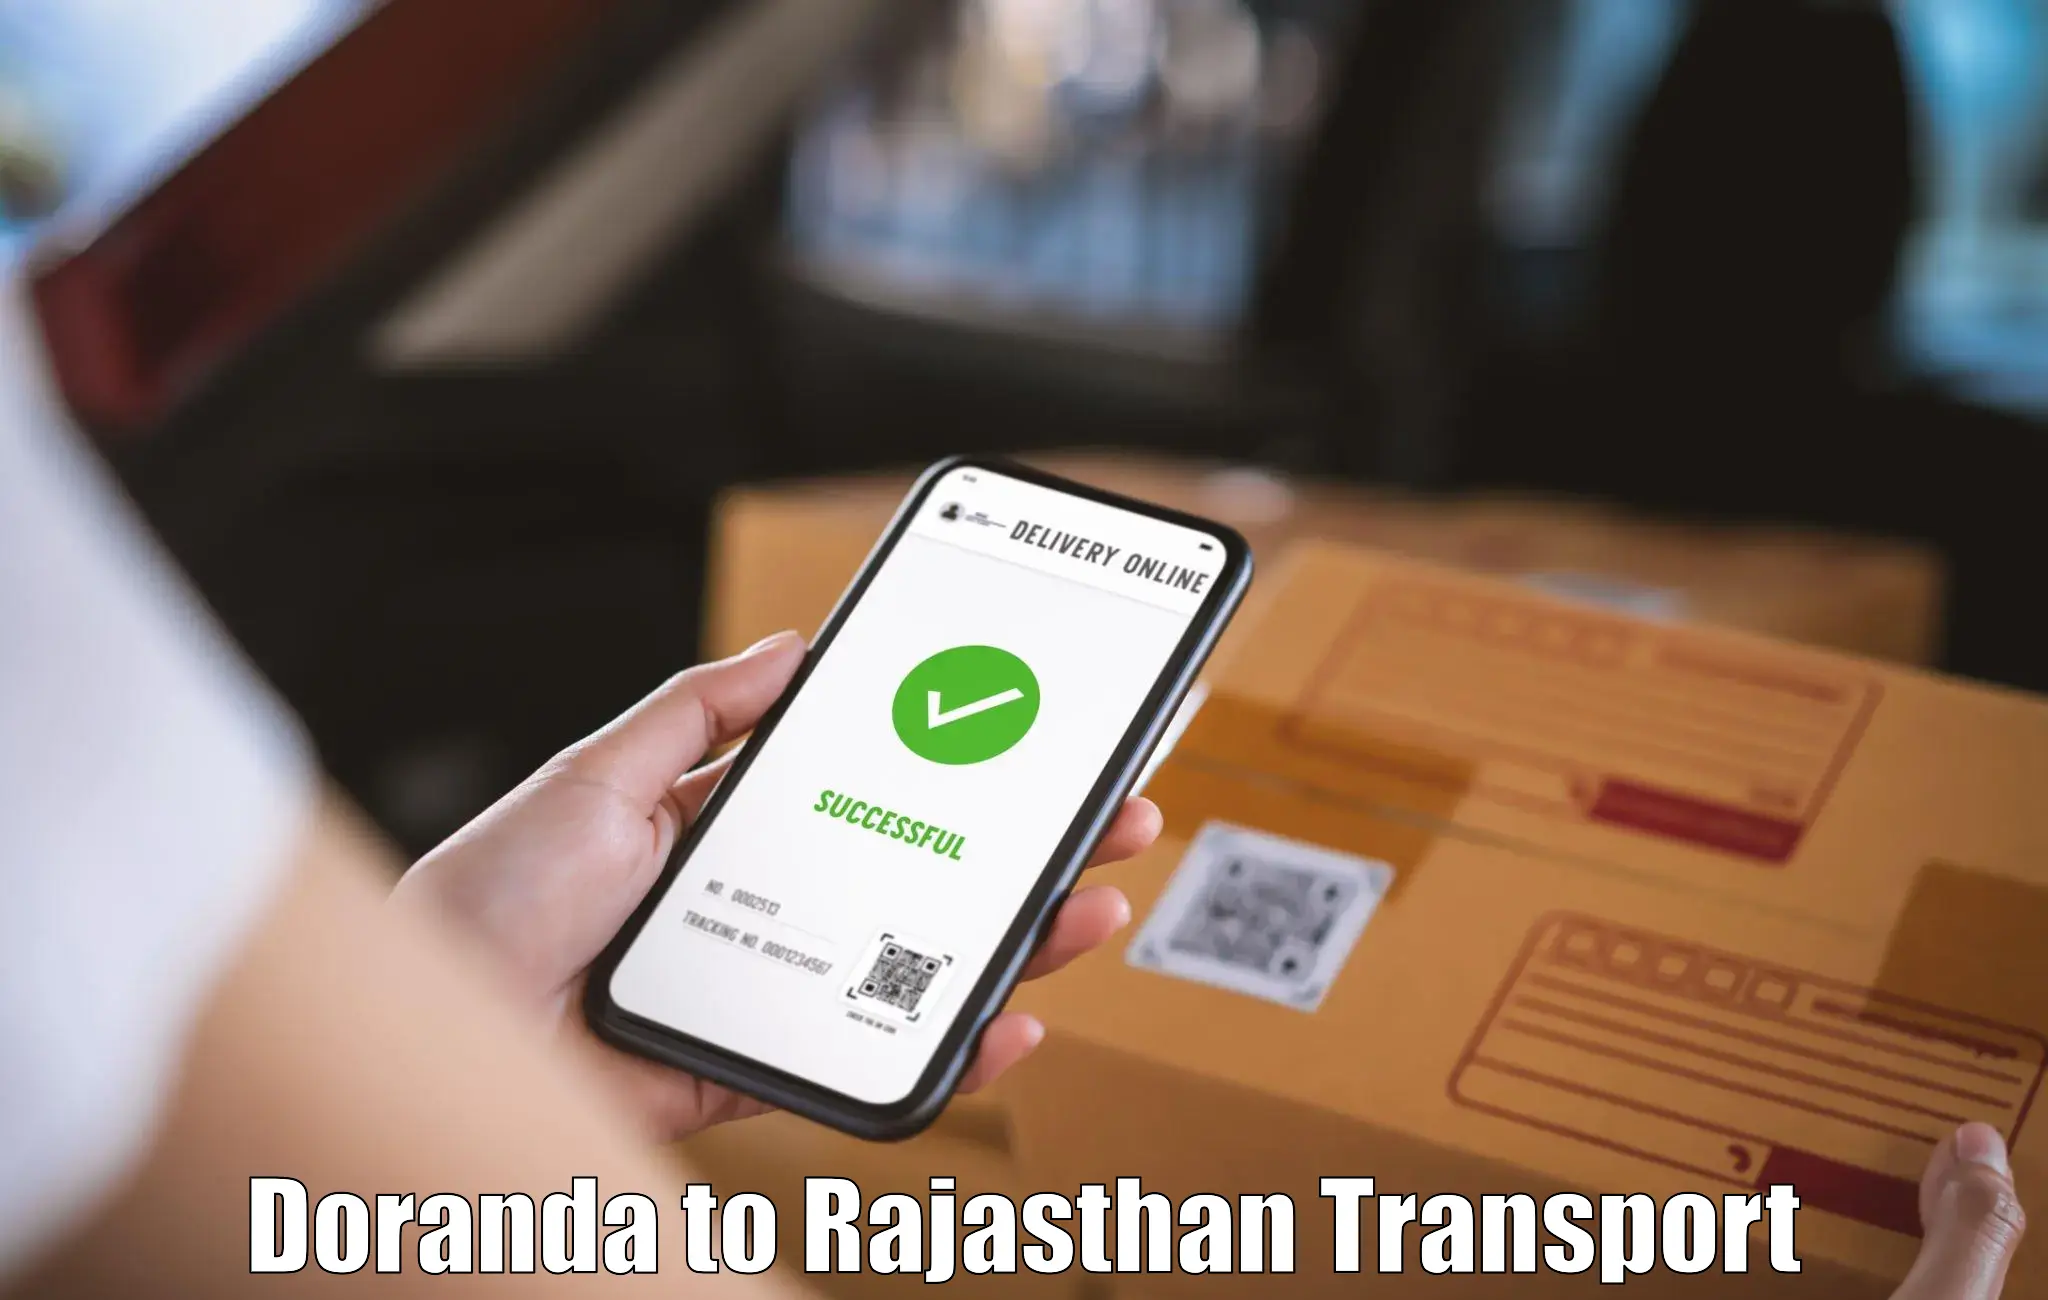 Transport in sharing Doranda to Tijara